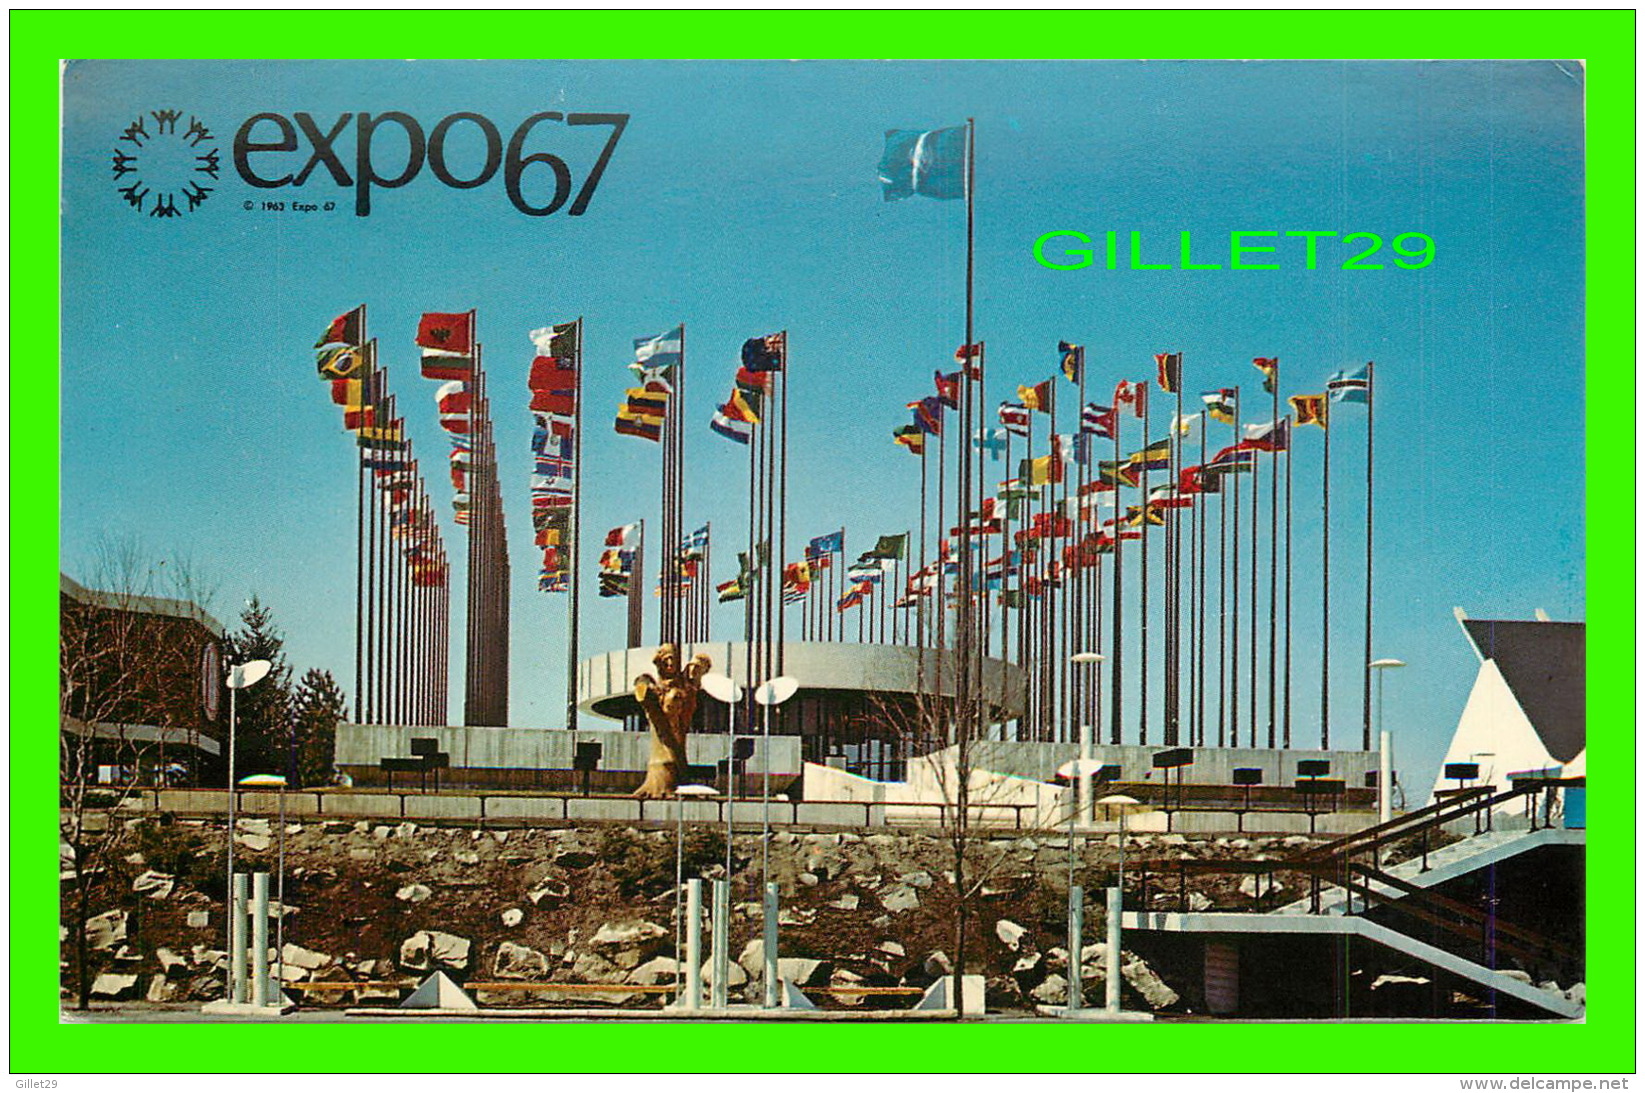 EXPOSITIONS - EXPO67, MONTRÉAL -  LE PAVILLON CONSACRÉ AUX NATIONS UNIES ;- No EX218 - MESSAGERIES DE PRESSE BENJAMIN - - Expositions